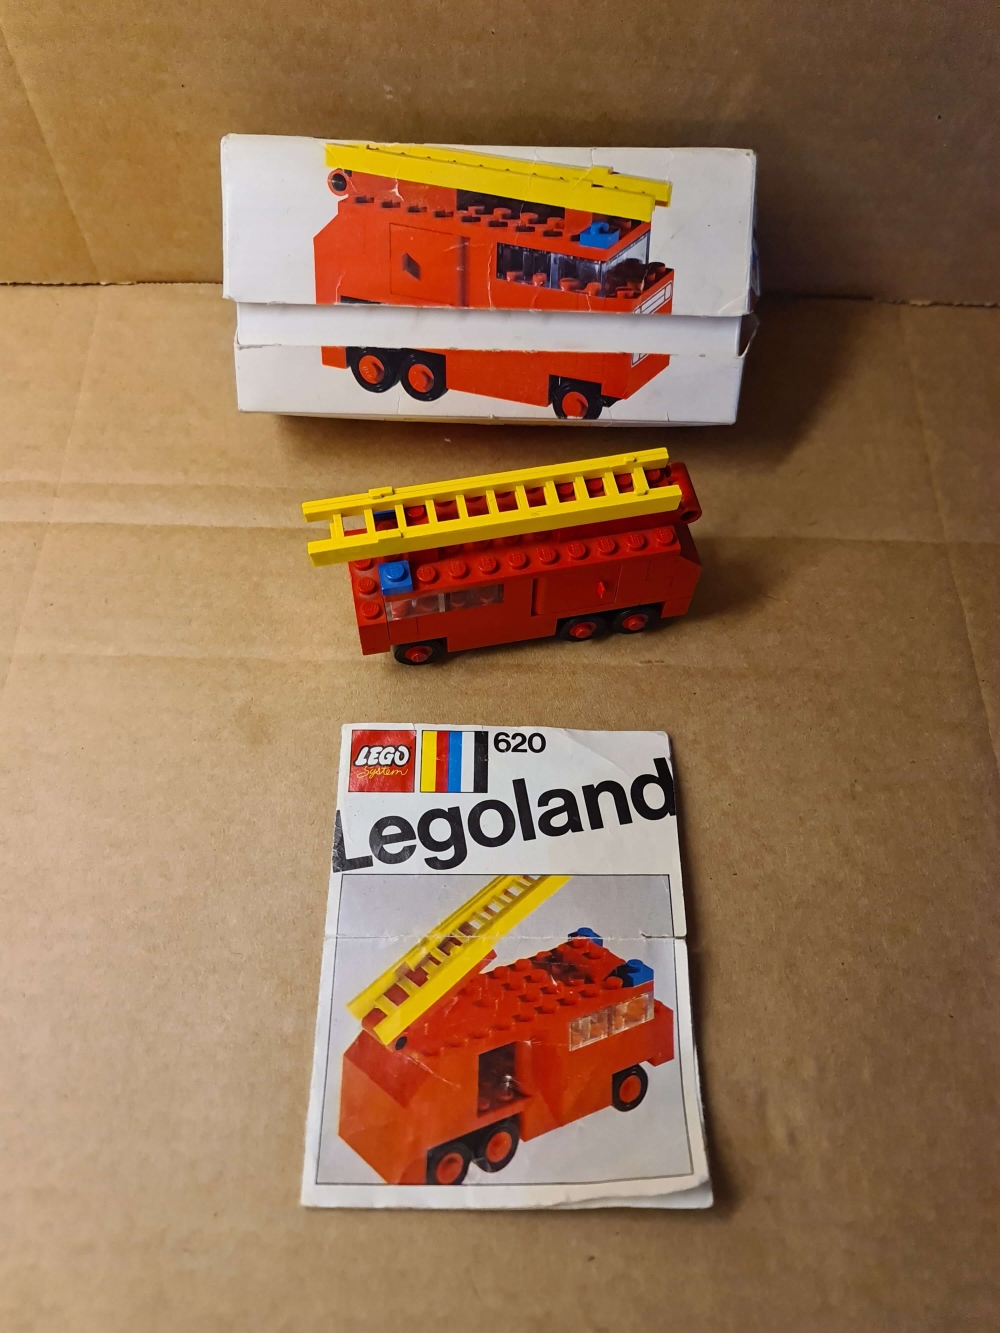 Sett 620-2 fra Lego Legoland serien.
Fint sett. Komplett med manual og eske.